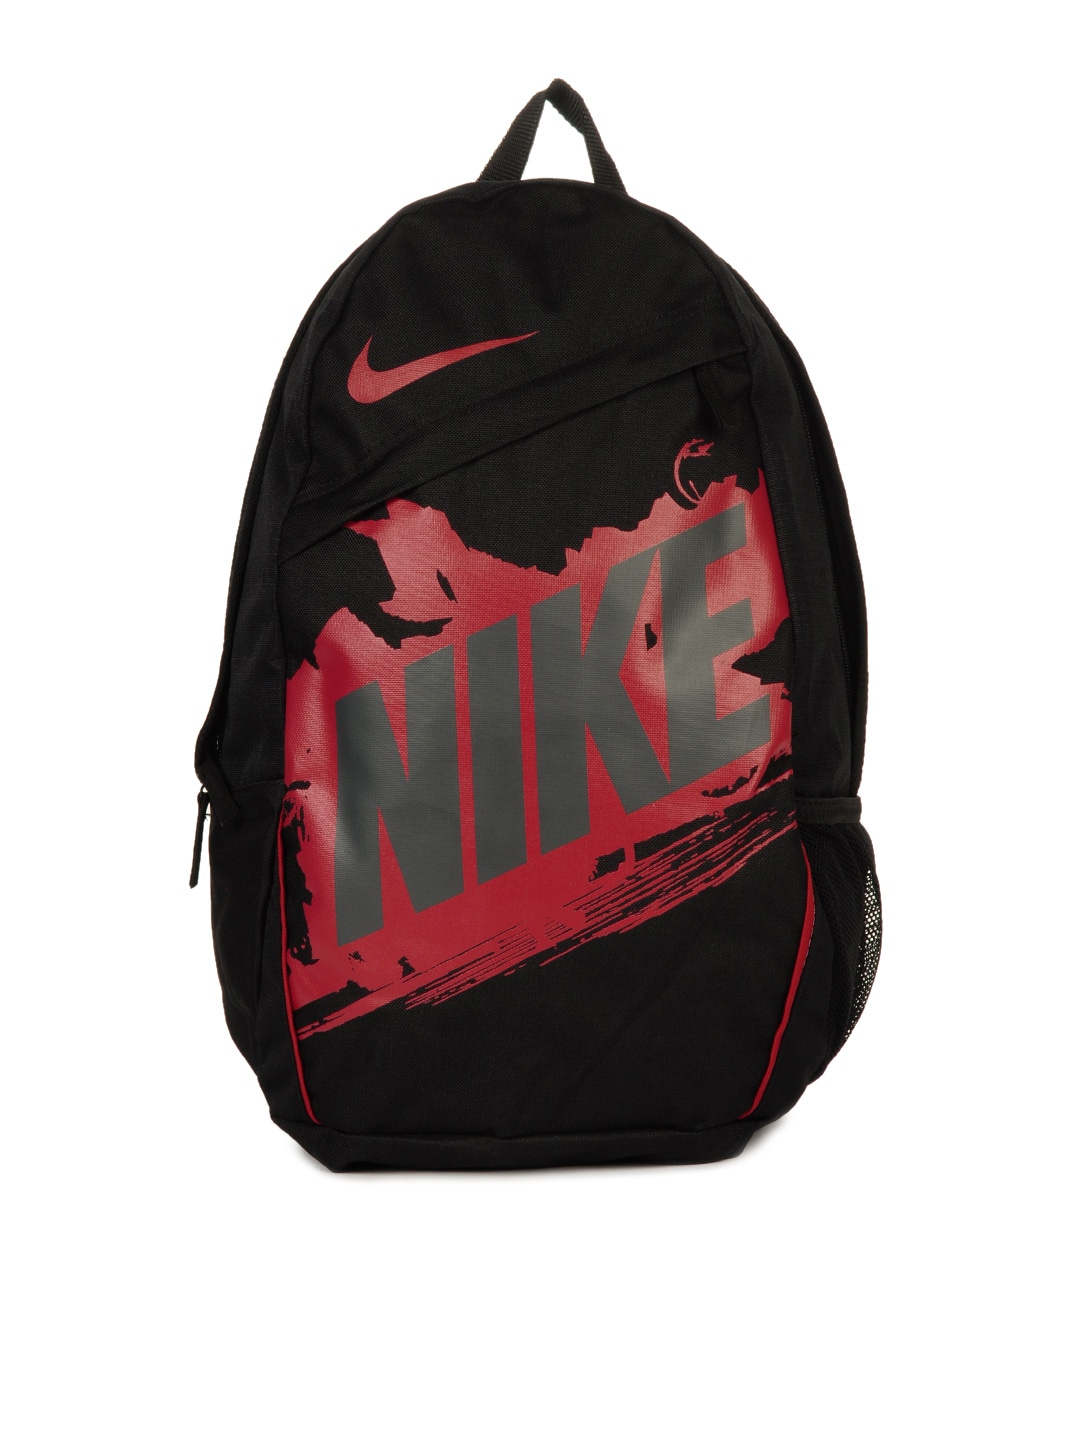 Nike Unisex Classic Turf Black Backpack